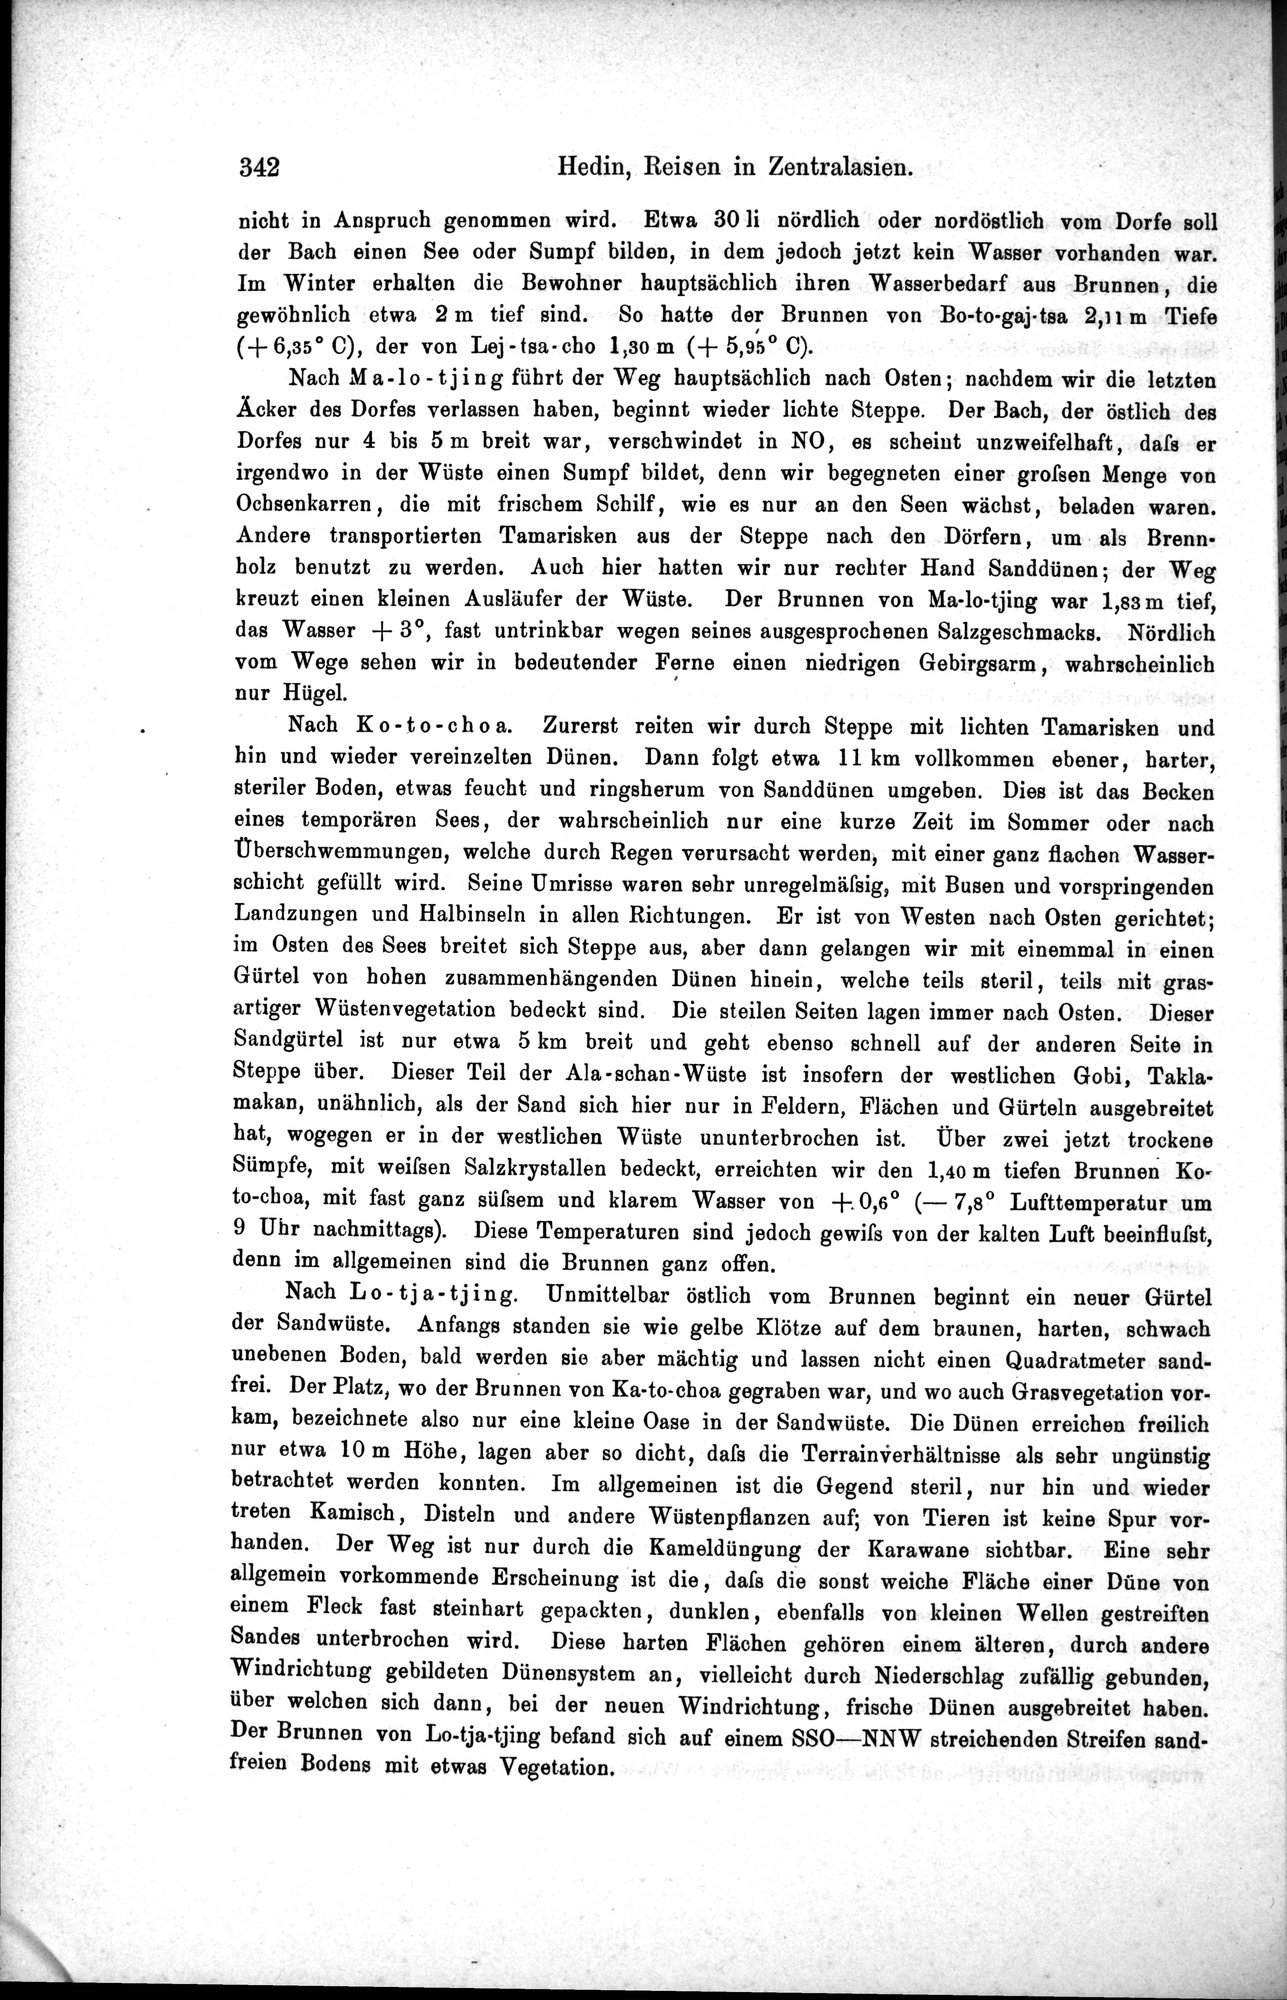 Die Geographische-Wissenschaftlichen Ergebnisse meiner Reisen in Zentralasien, 1894-1897 : vol.1 / Page 354 (Grayscale High Resolution Image)